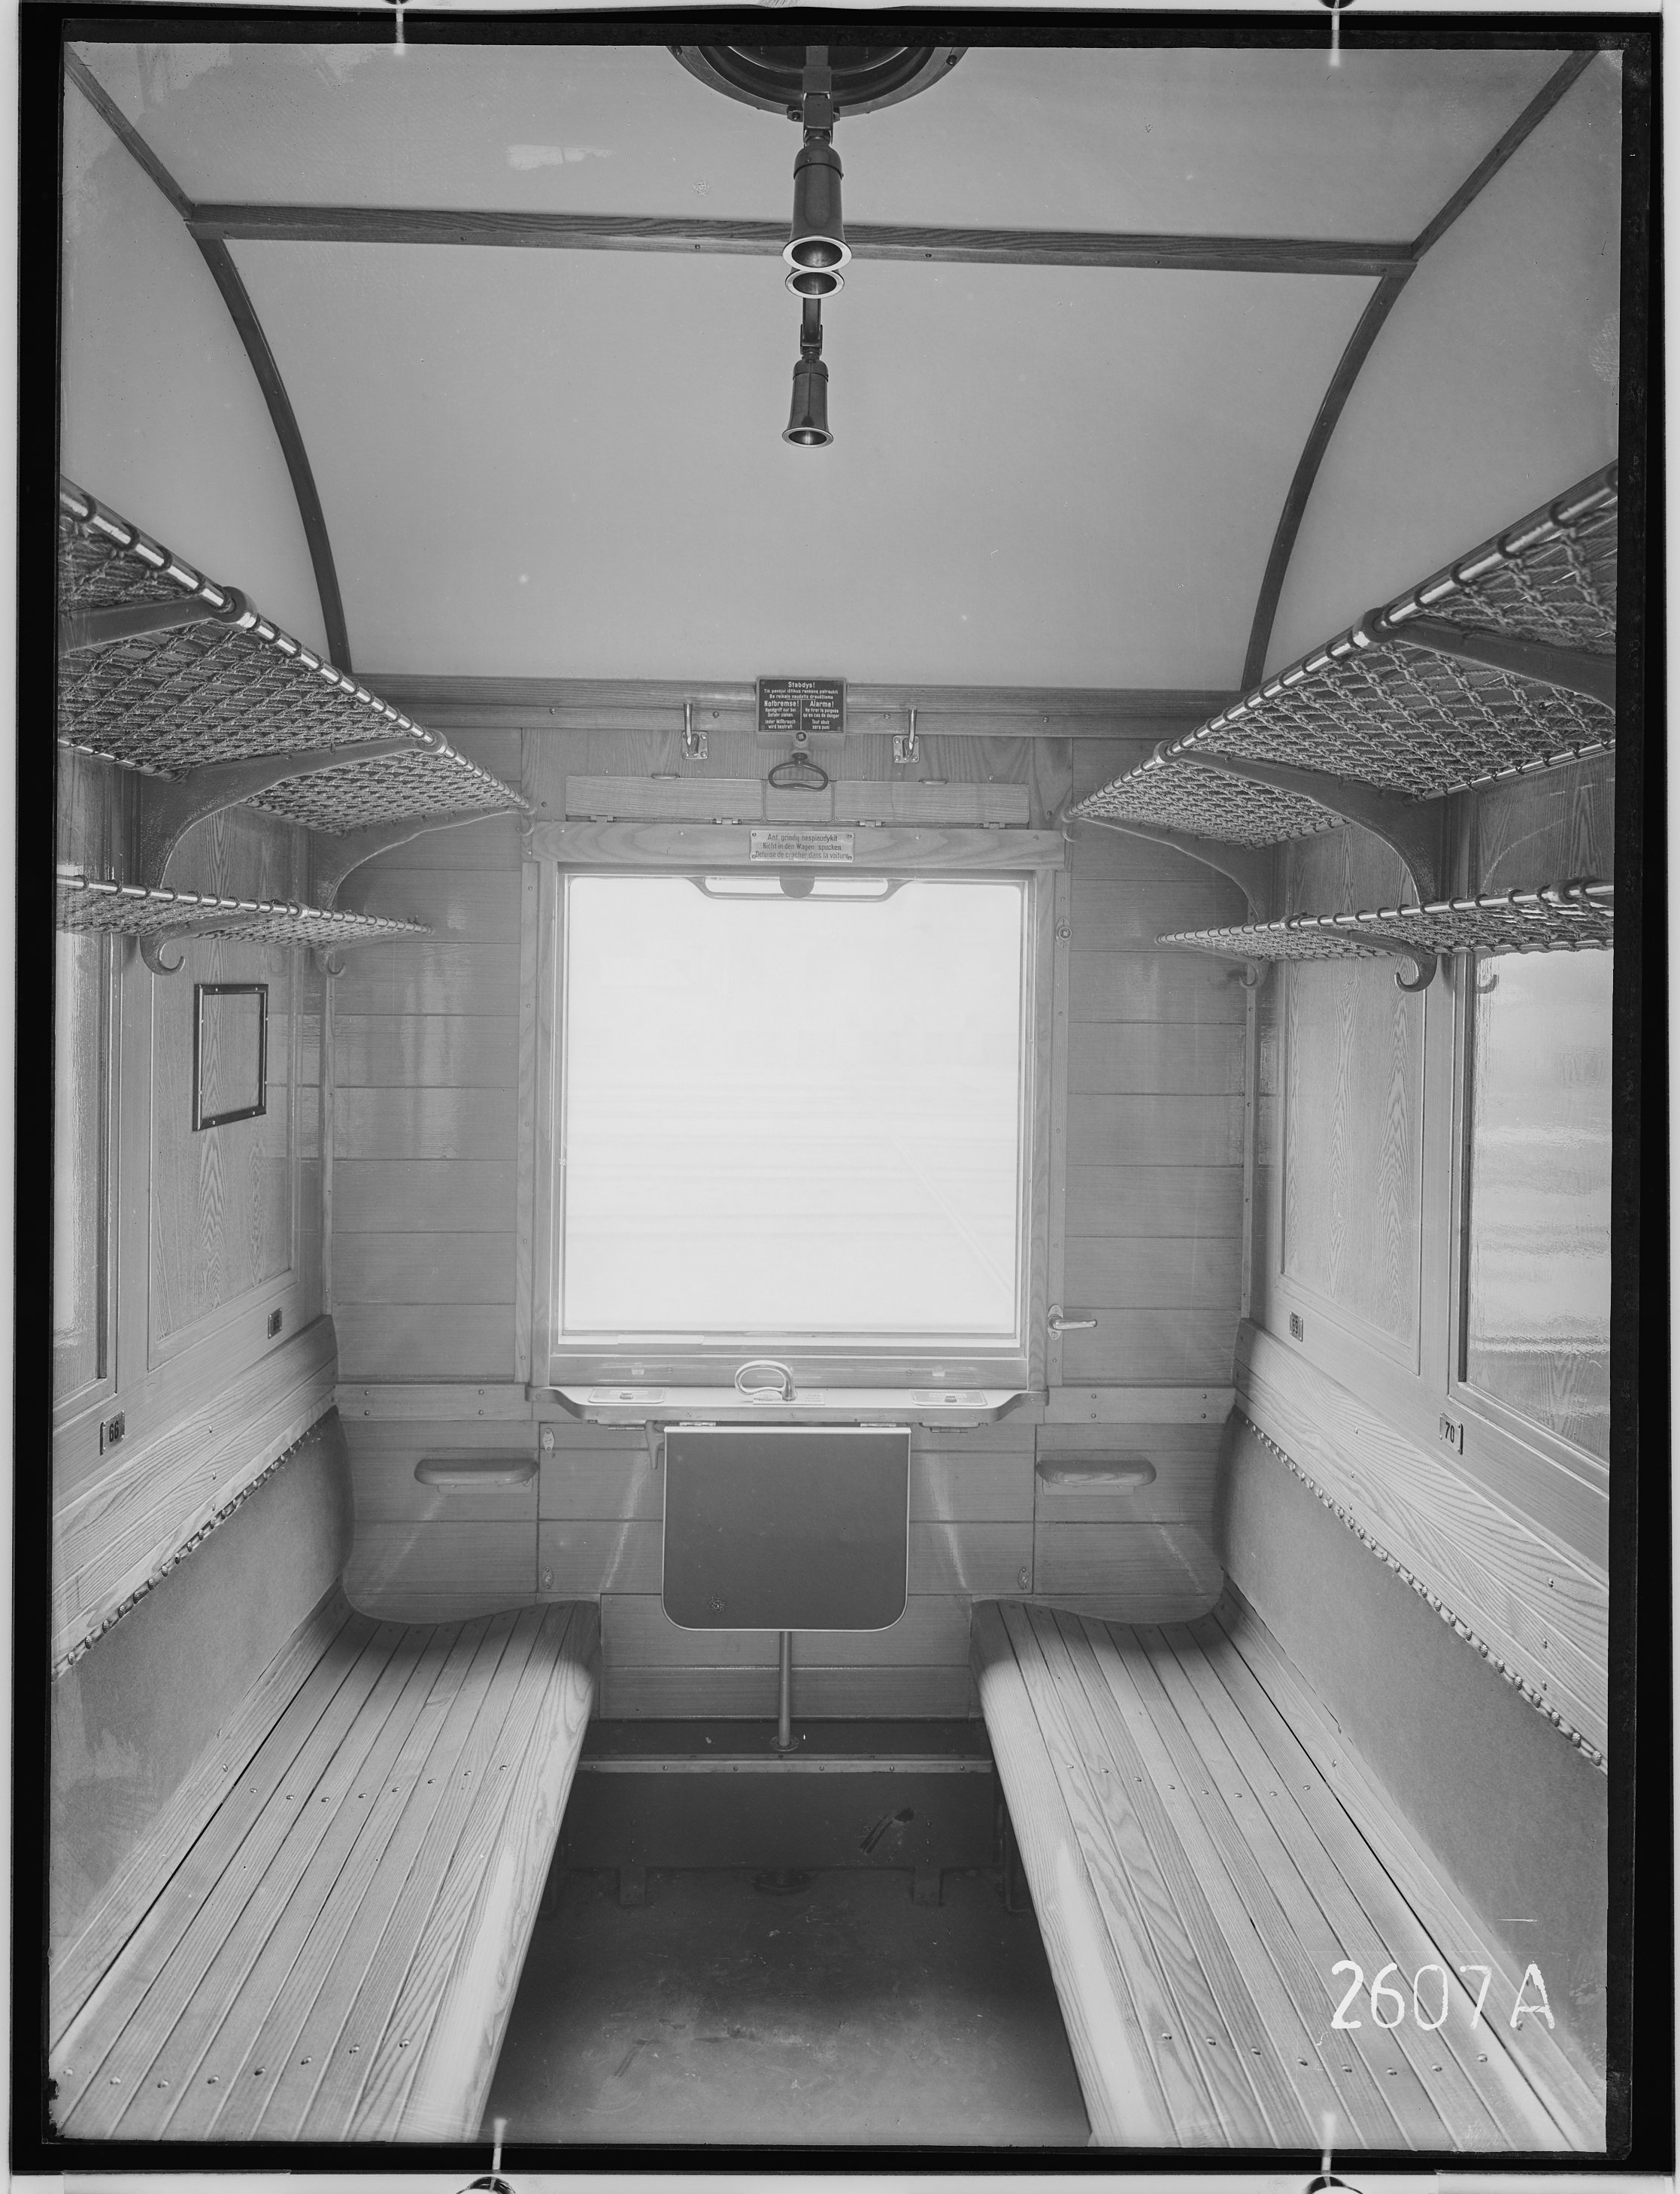 Fotografie: vierachsiger D-Zugwagen dritter Klasse, Gattung C4ü, für Litauen (Innenansicht, Spurweite: 1435 mm), Abteil mit Blick zum Fenster, 1932. L (Verkehrsmuseum Dresden CC BY-NC-SA)